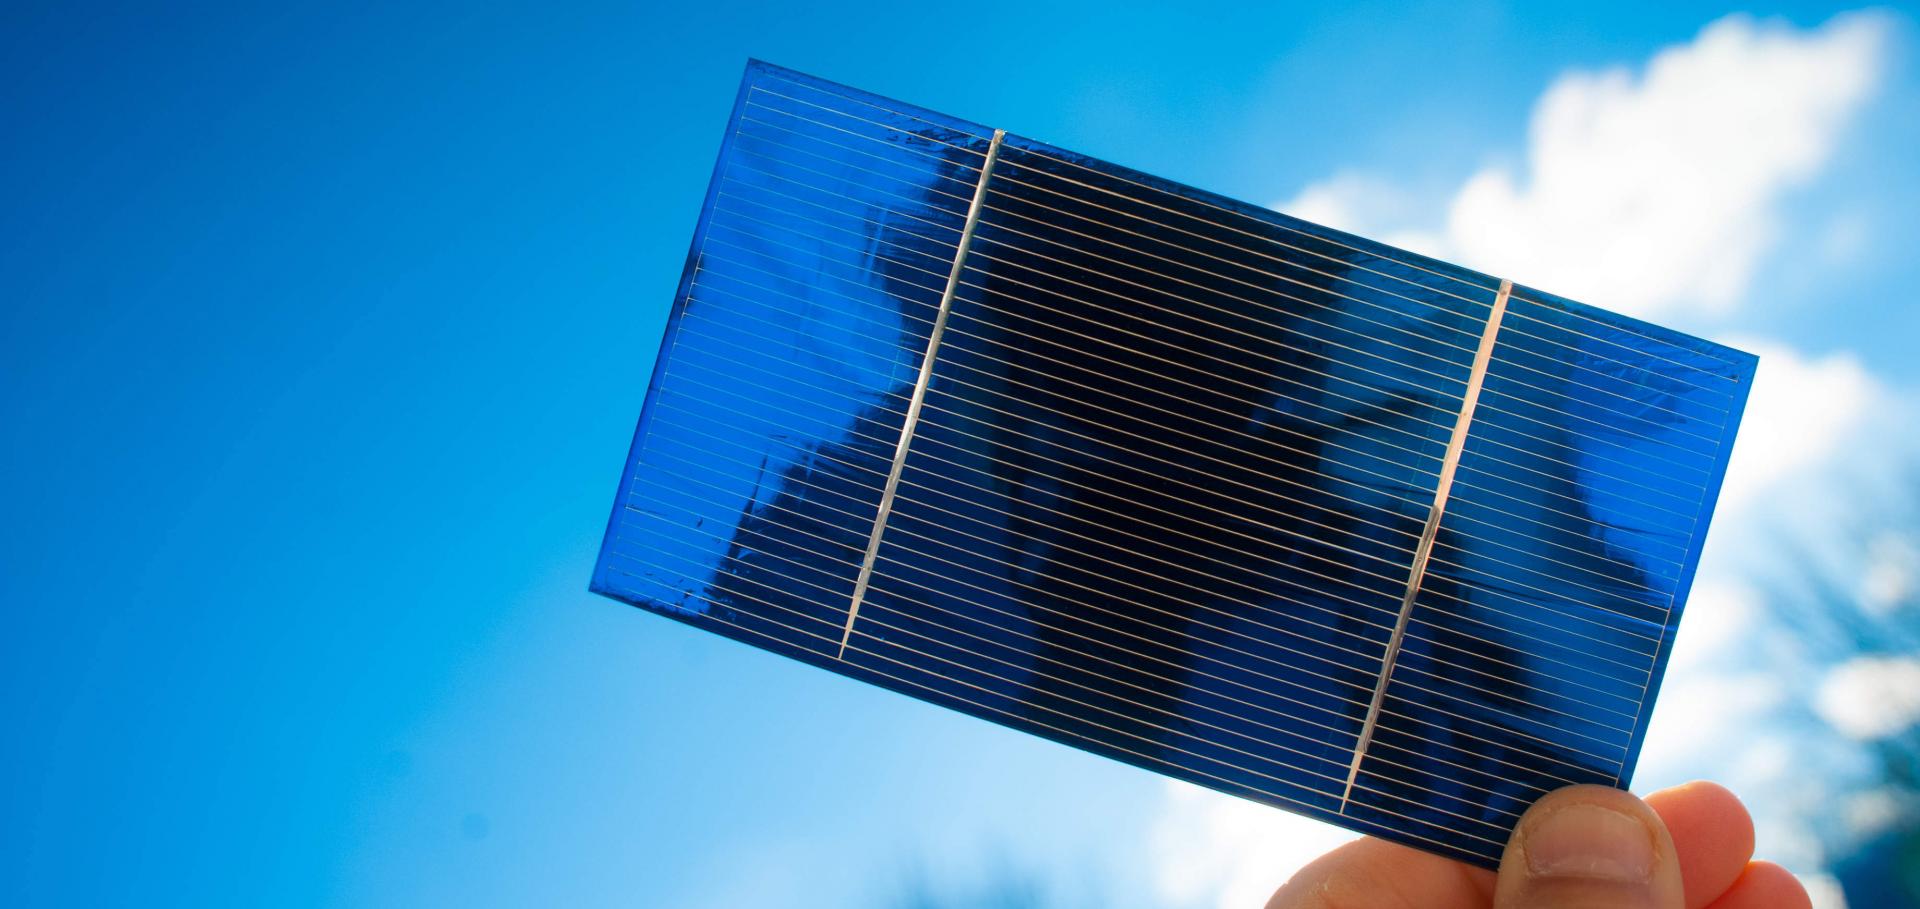 Perovskite tandem solar cells